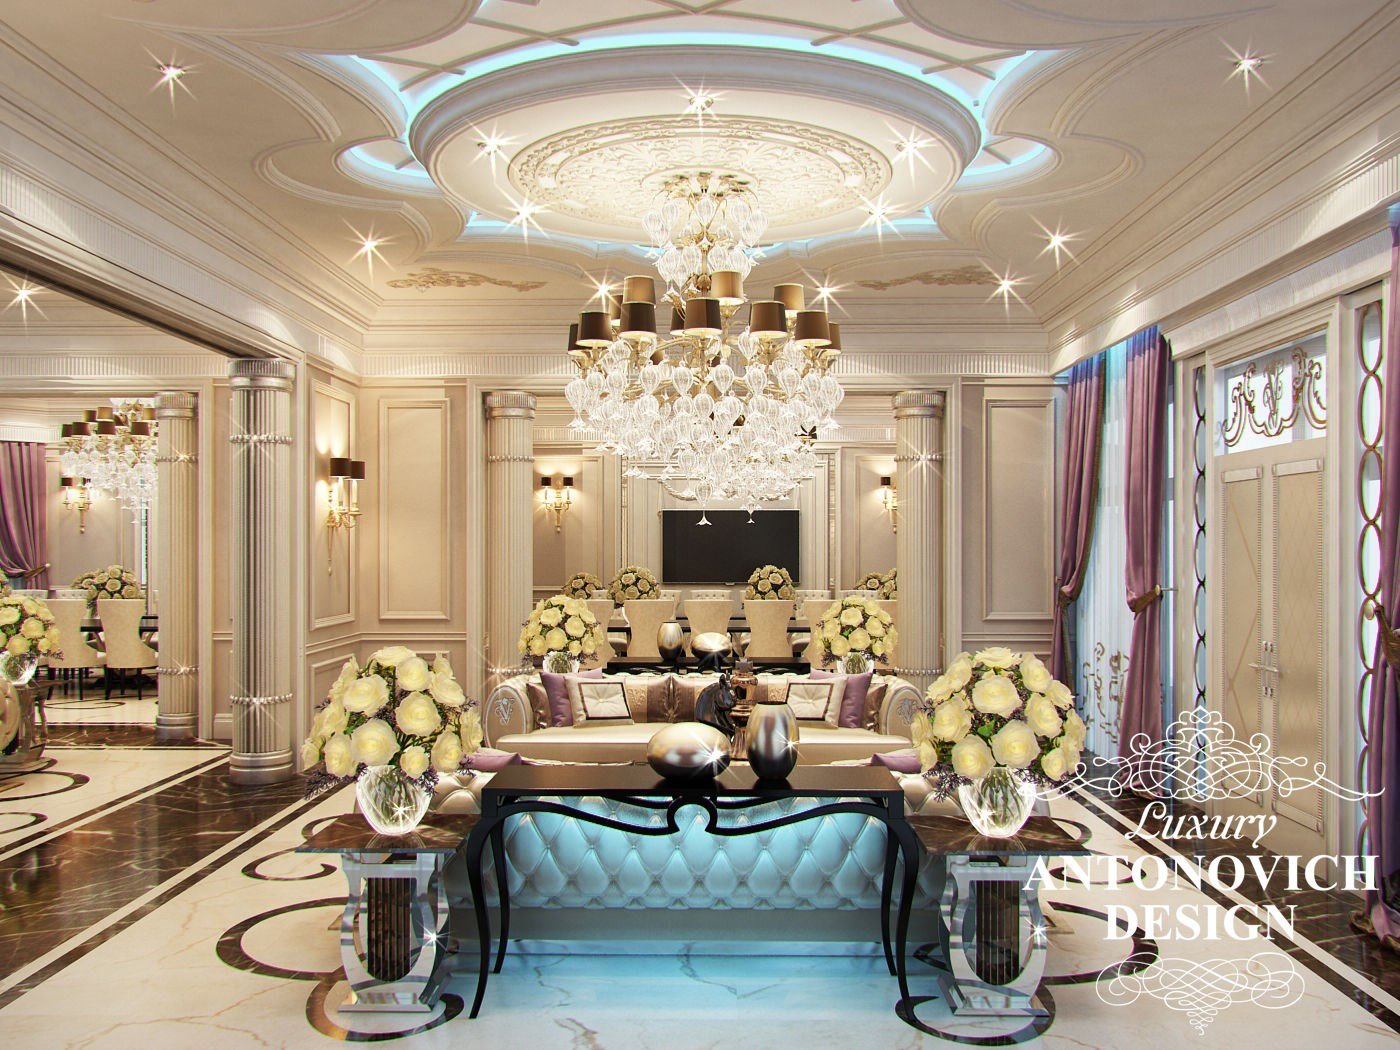 Элитный дизайн интерьера дома с красивой столовой в стиле современная классика от дизайн студии Luxury Antonovich Design